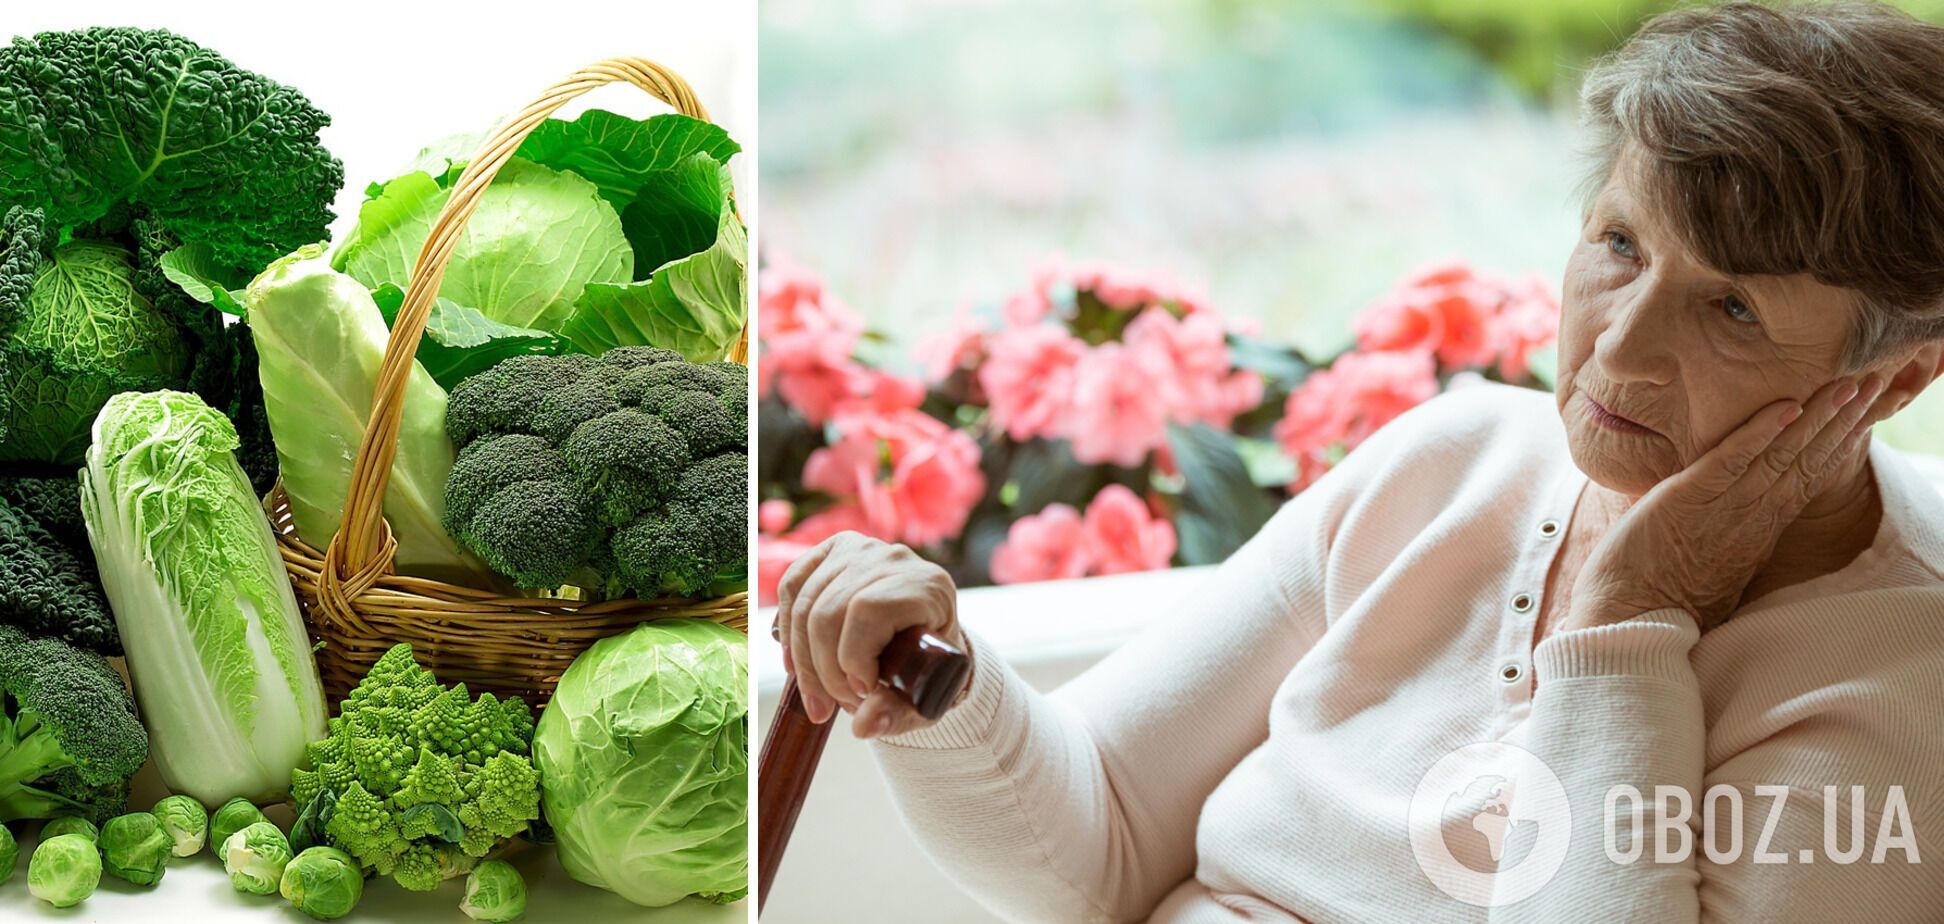 Зеленые листовые овощи полезны для предотвращения развития деменции